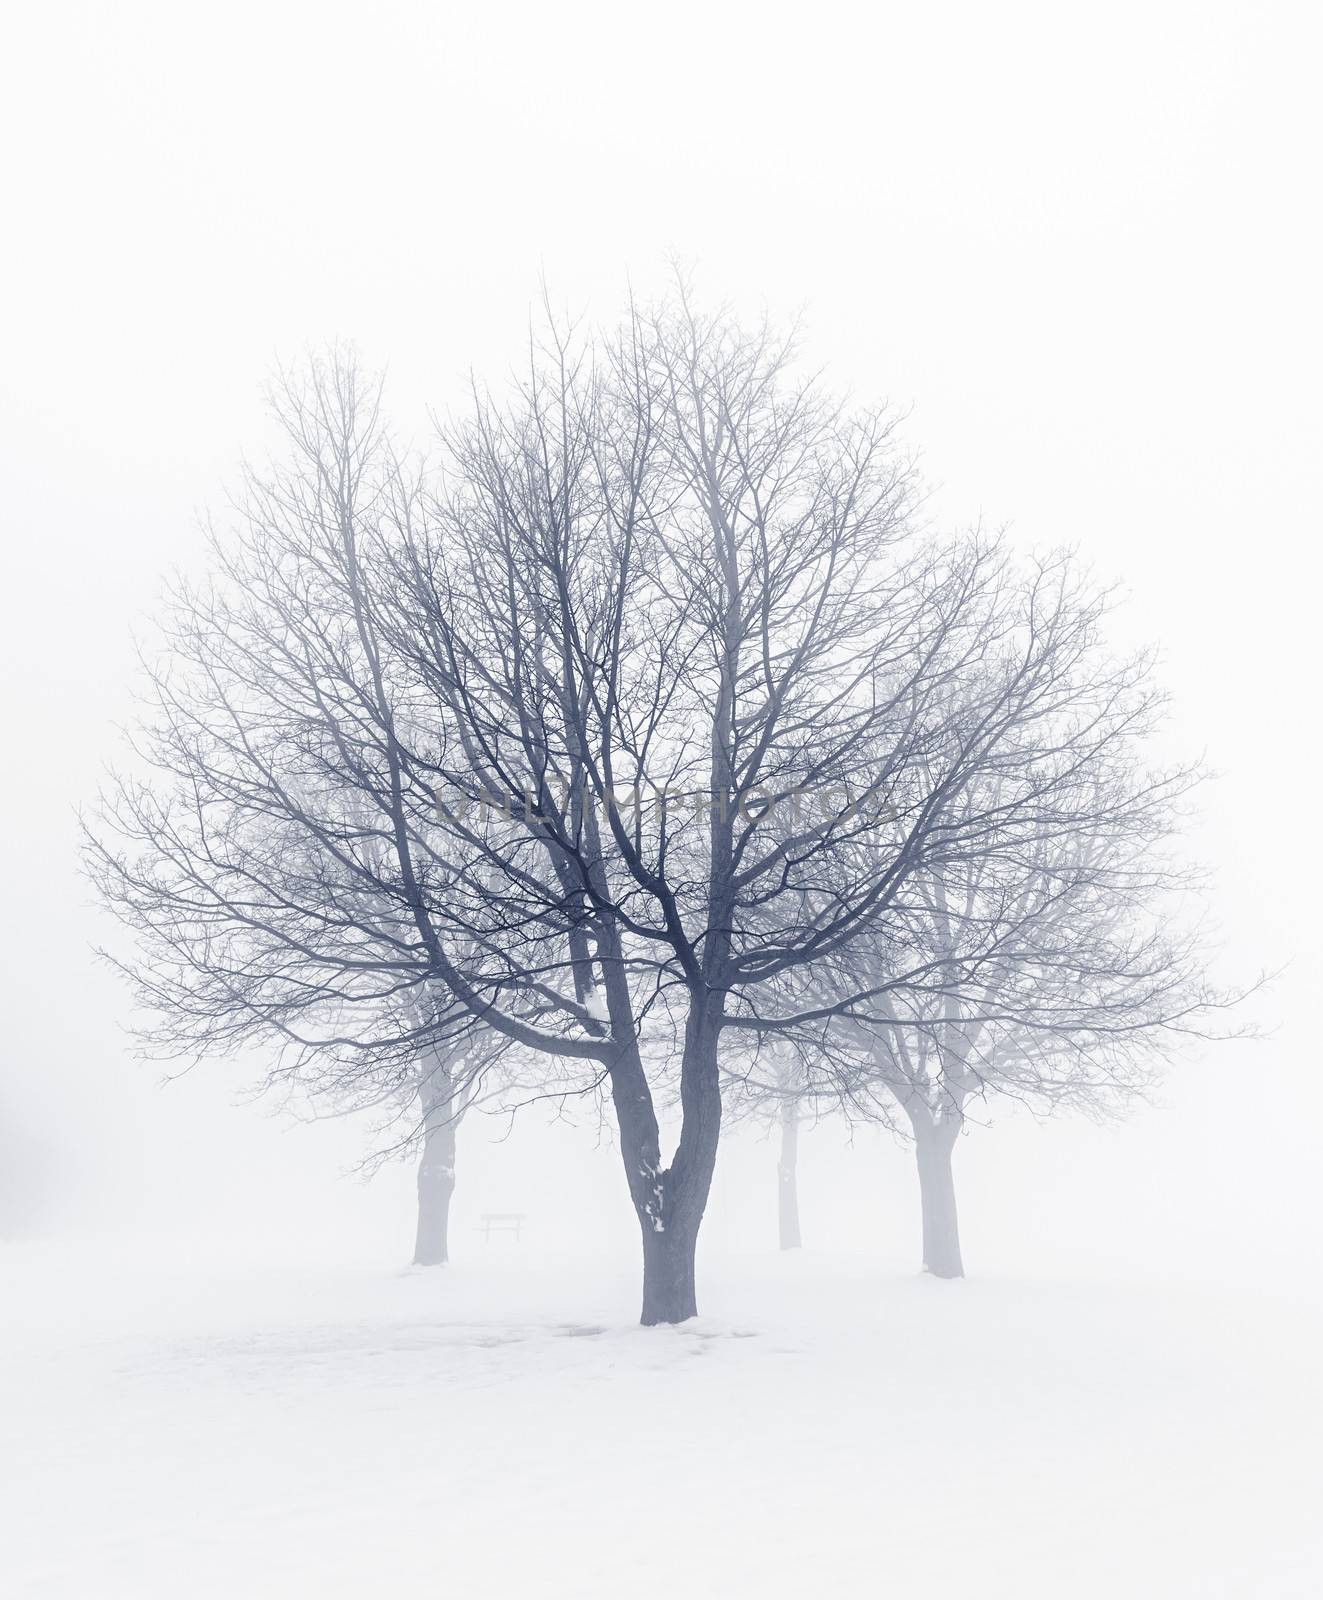 Winter scene of leafless trees in fog